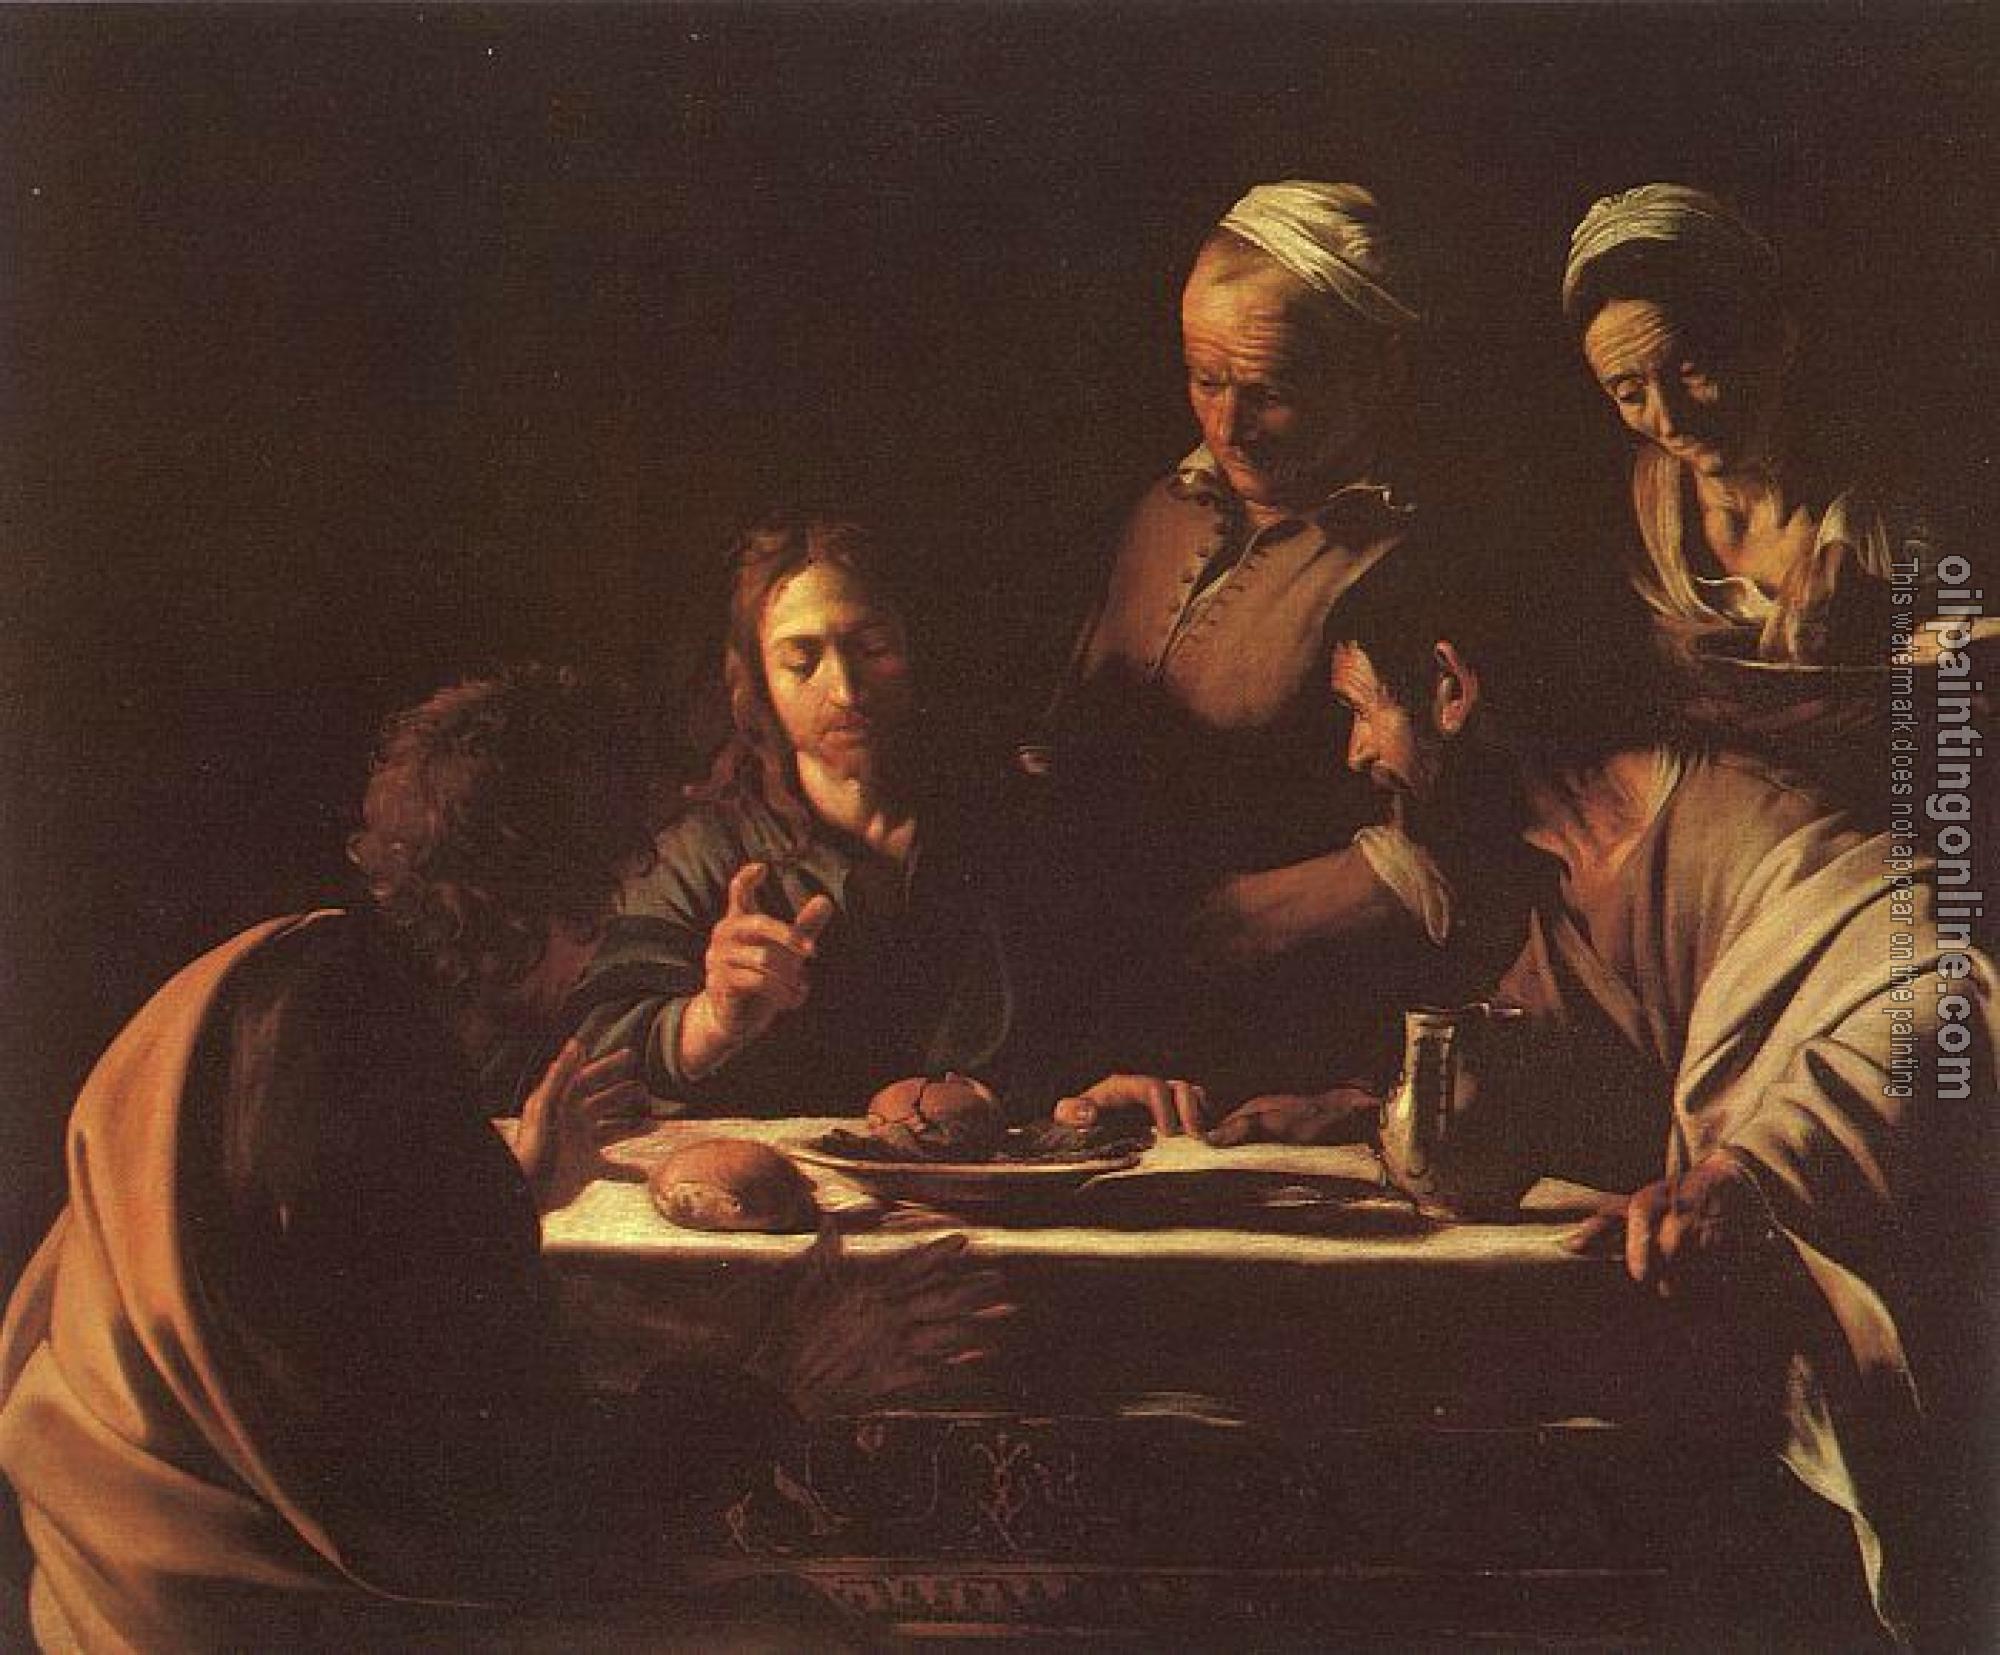 Caravaggio - Supper in Emmaus